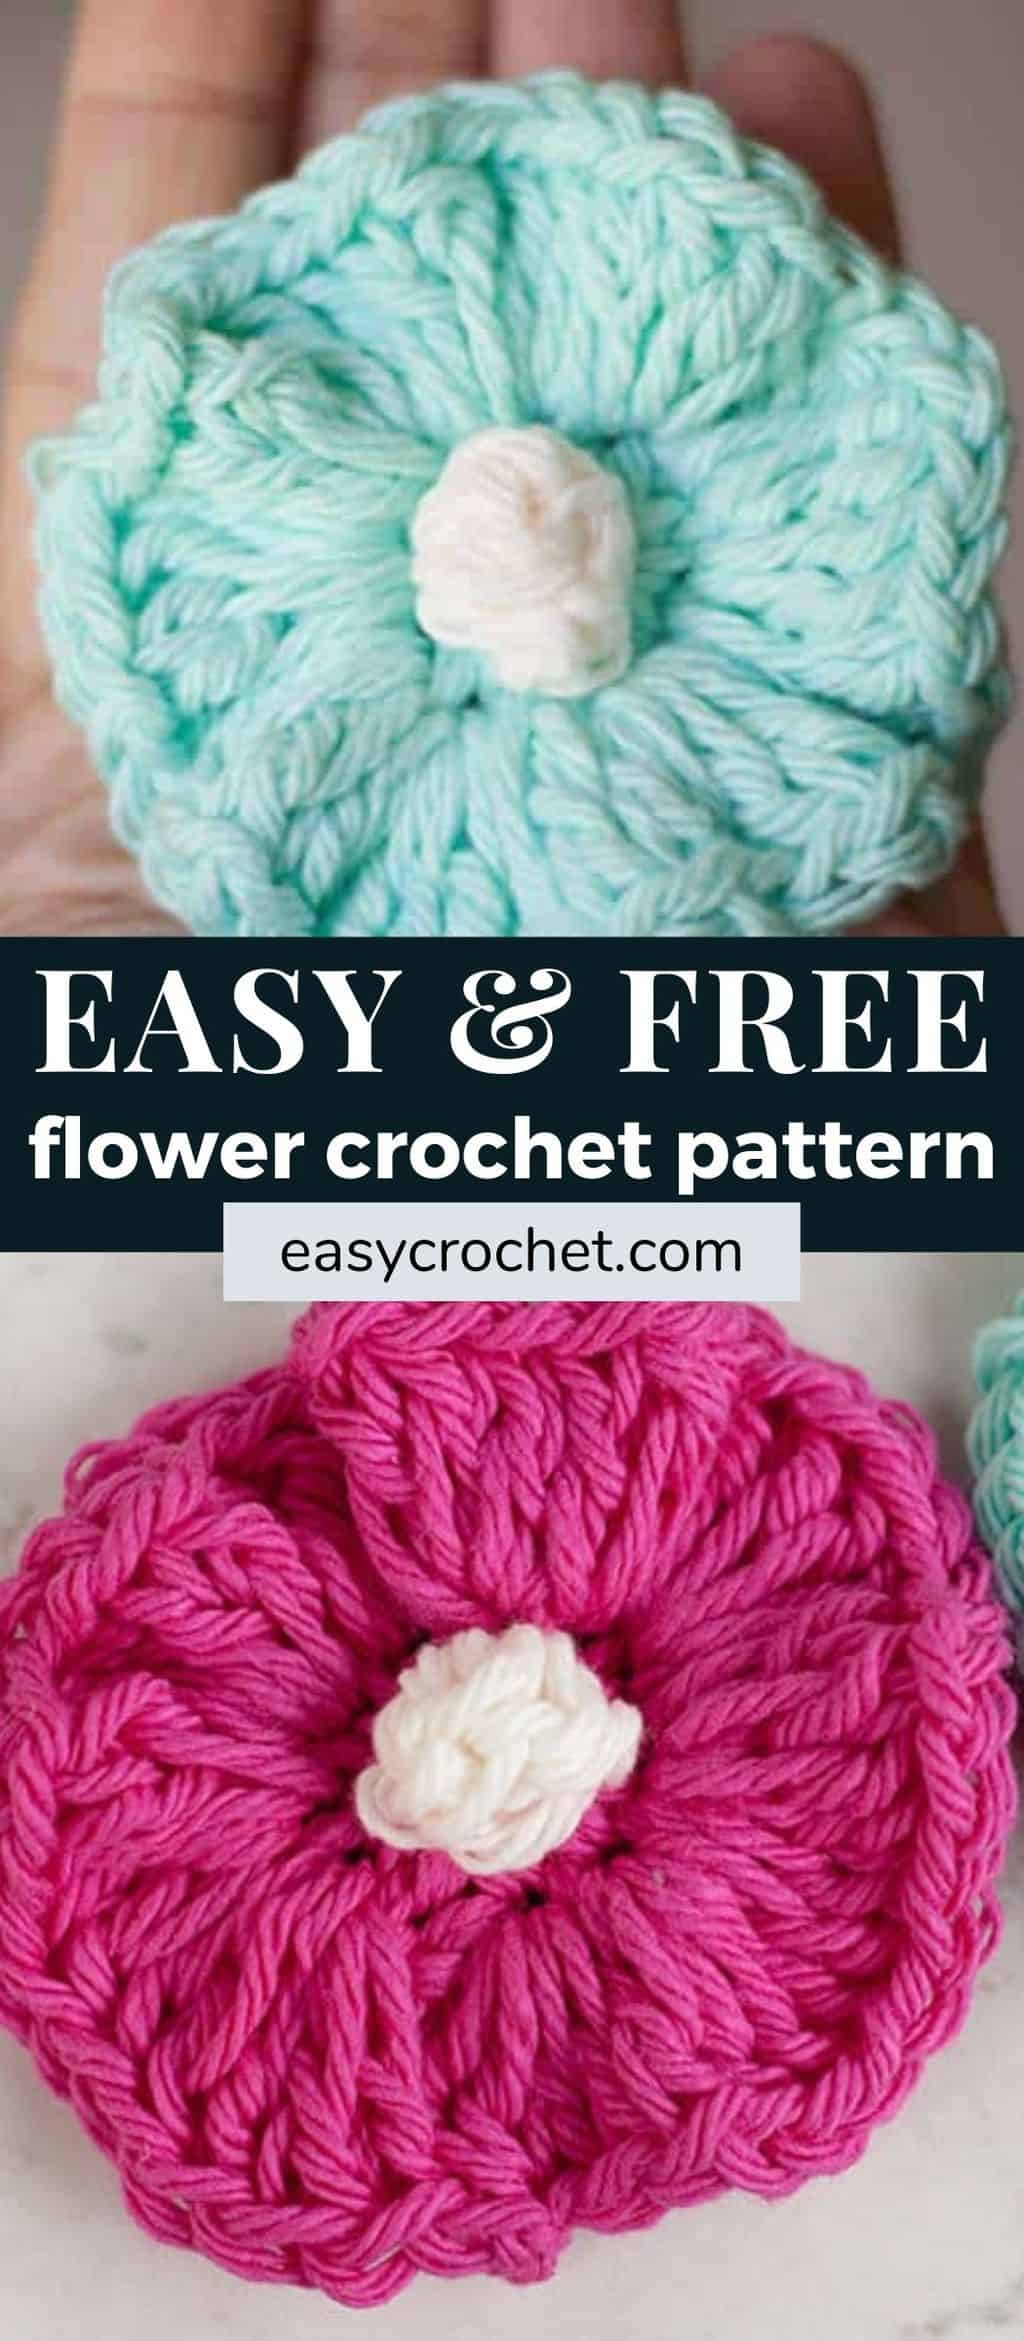 Free crochet flower pattern